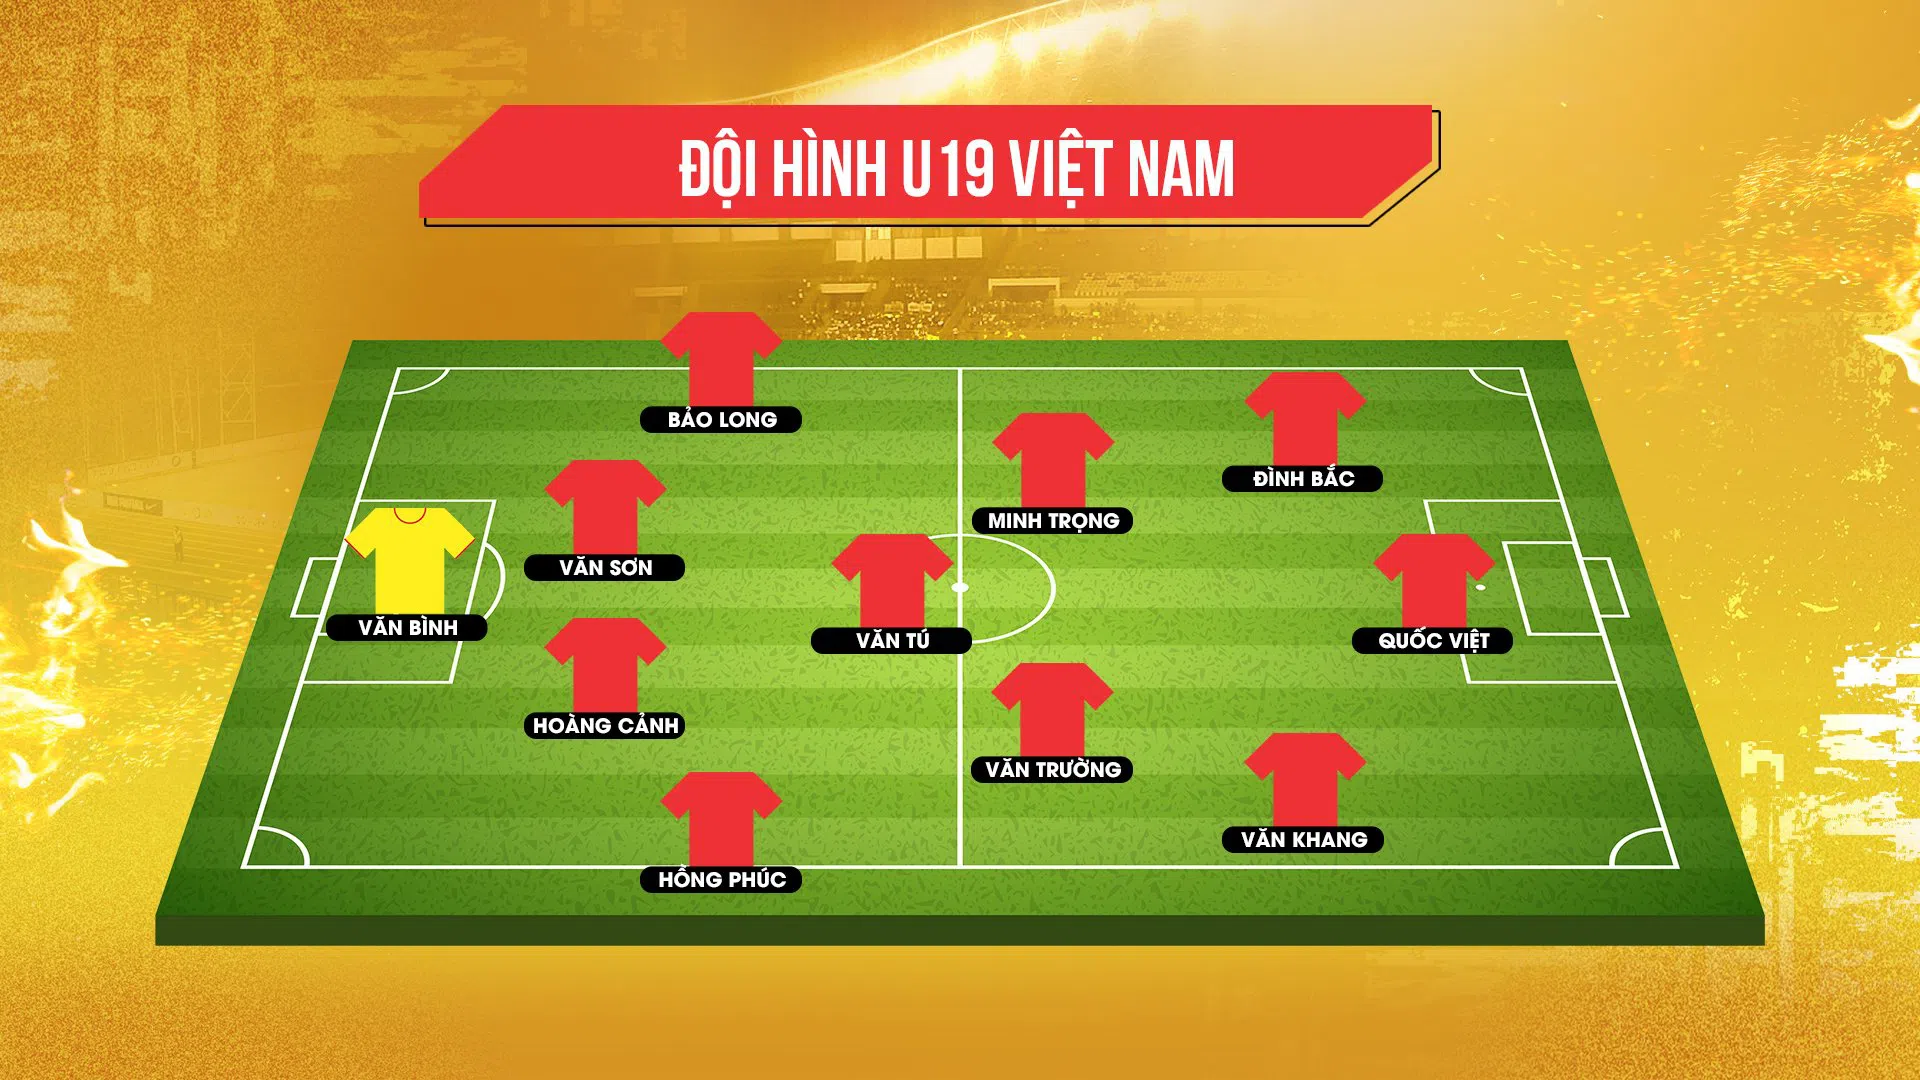 Trực tiếp U19 Việt Nam vs U19 Philippines: Văn Trường, Văn Khang đá chính 155018